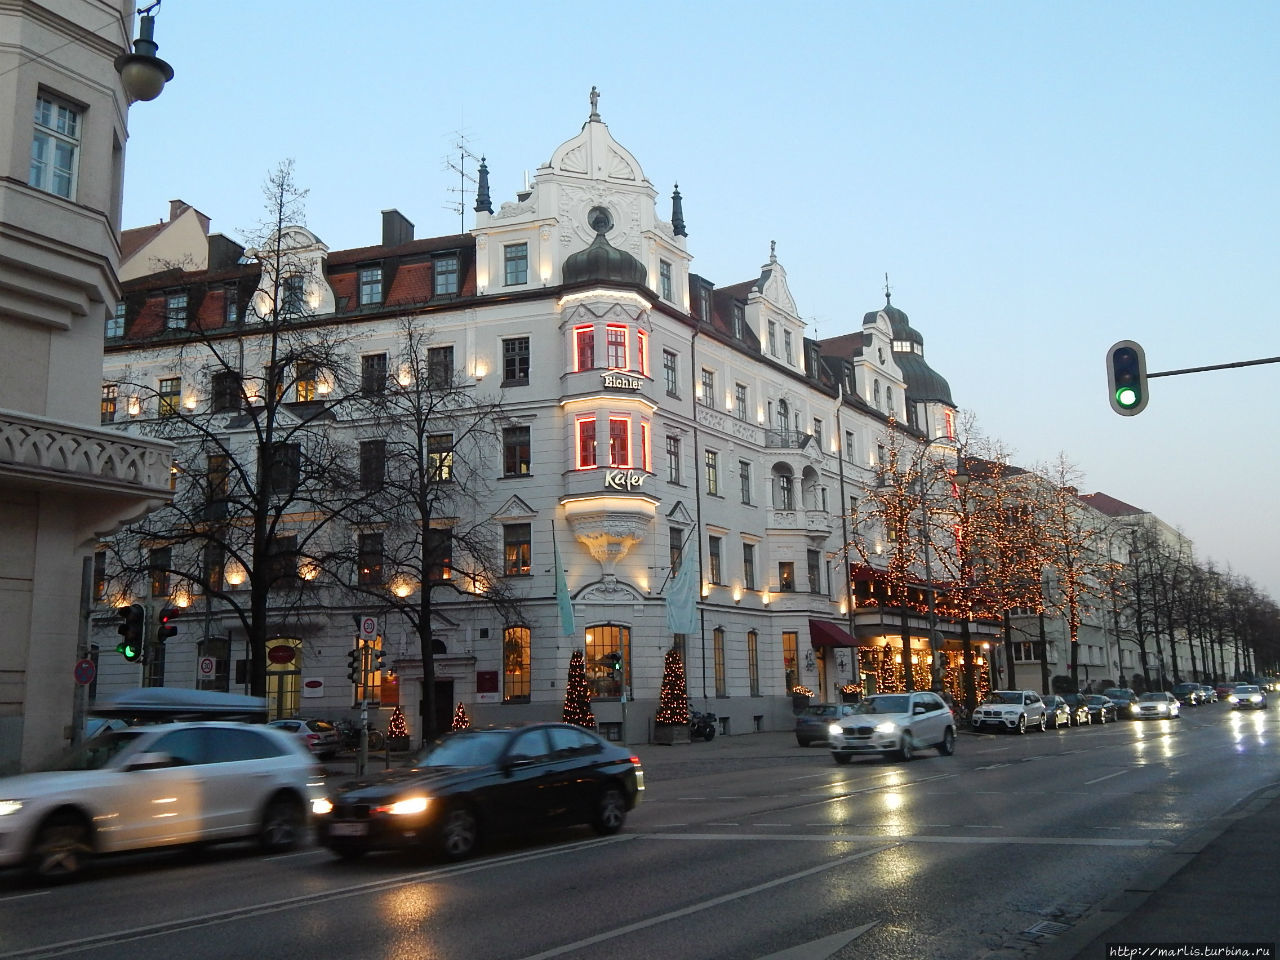 Prinzregentenstrasse